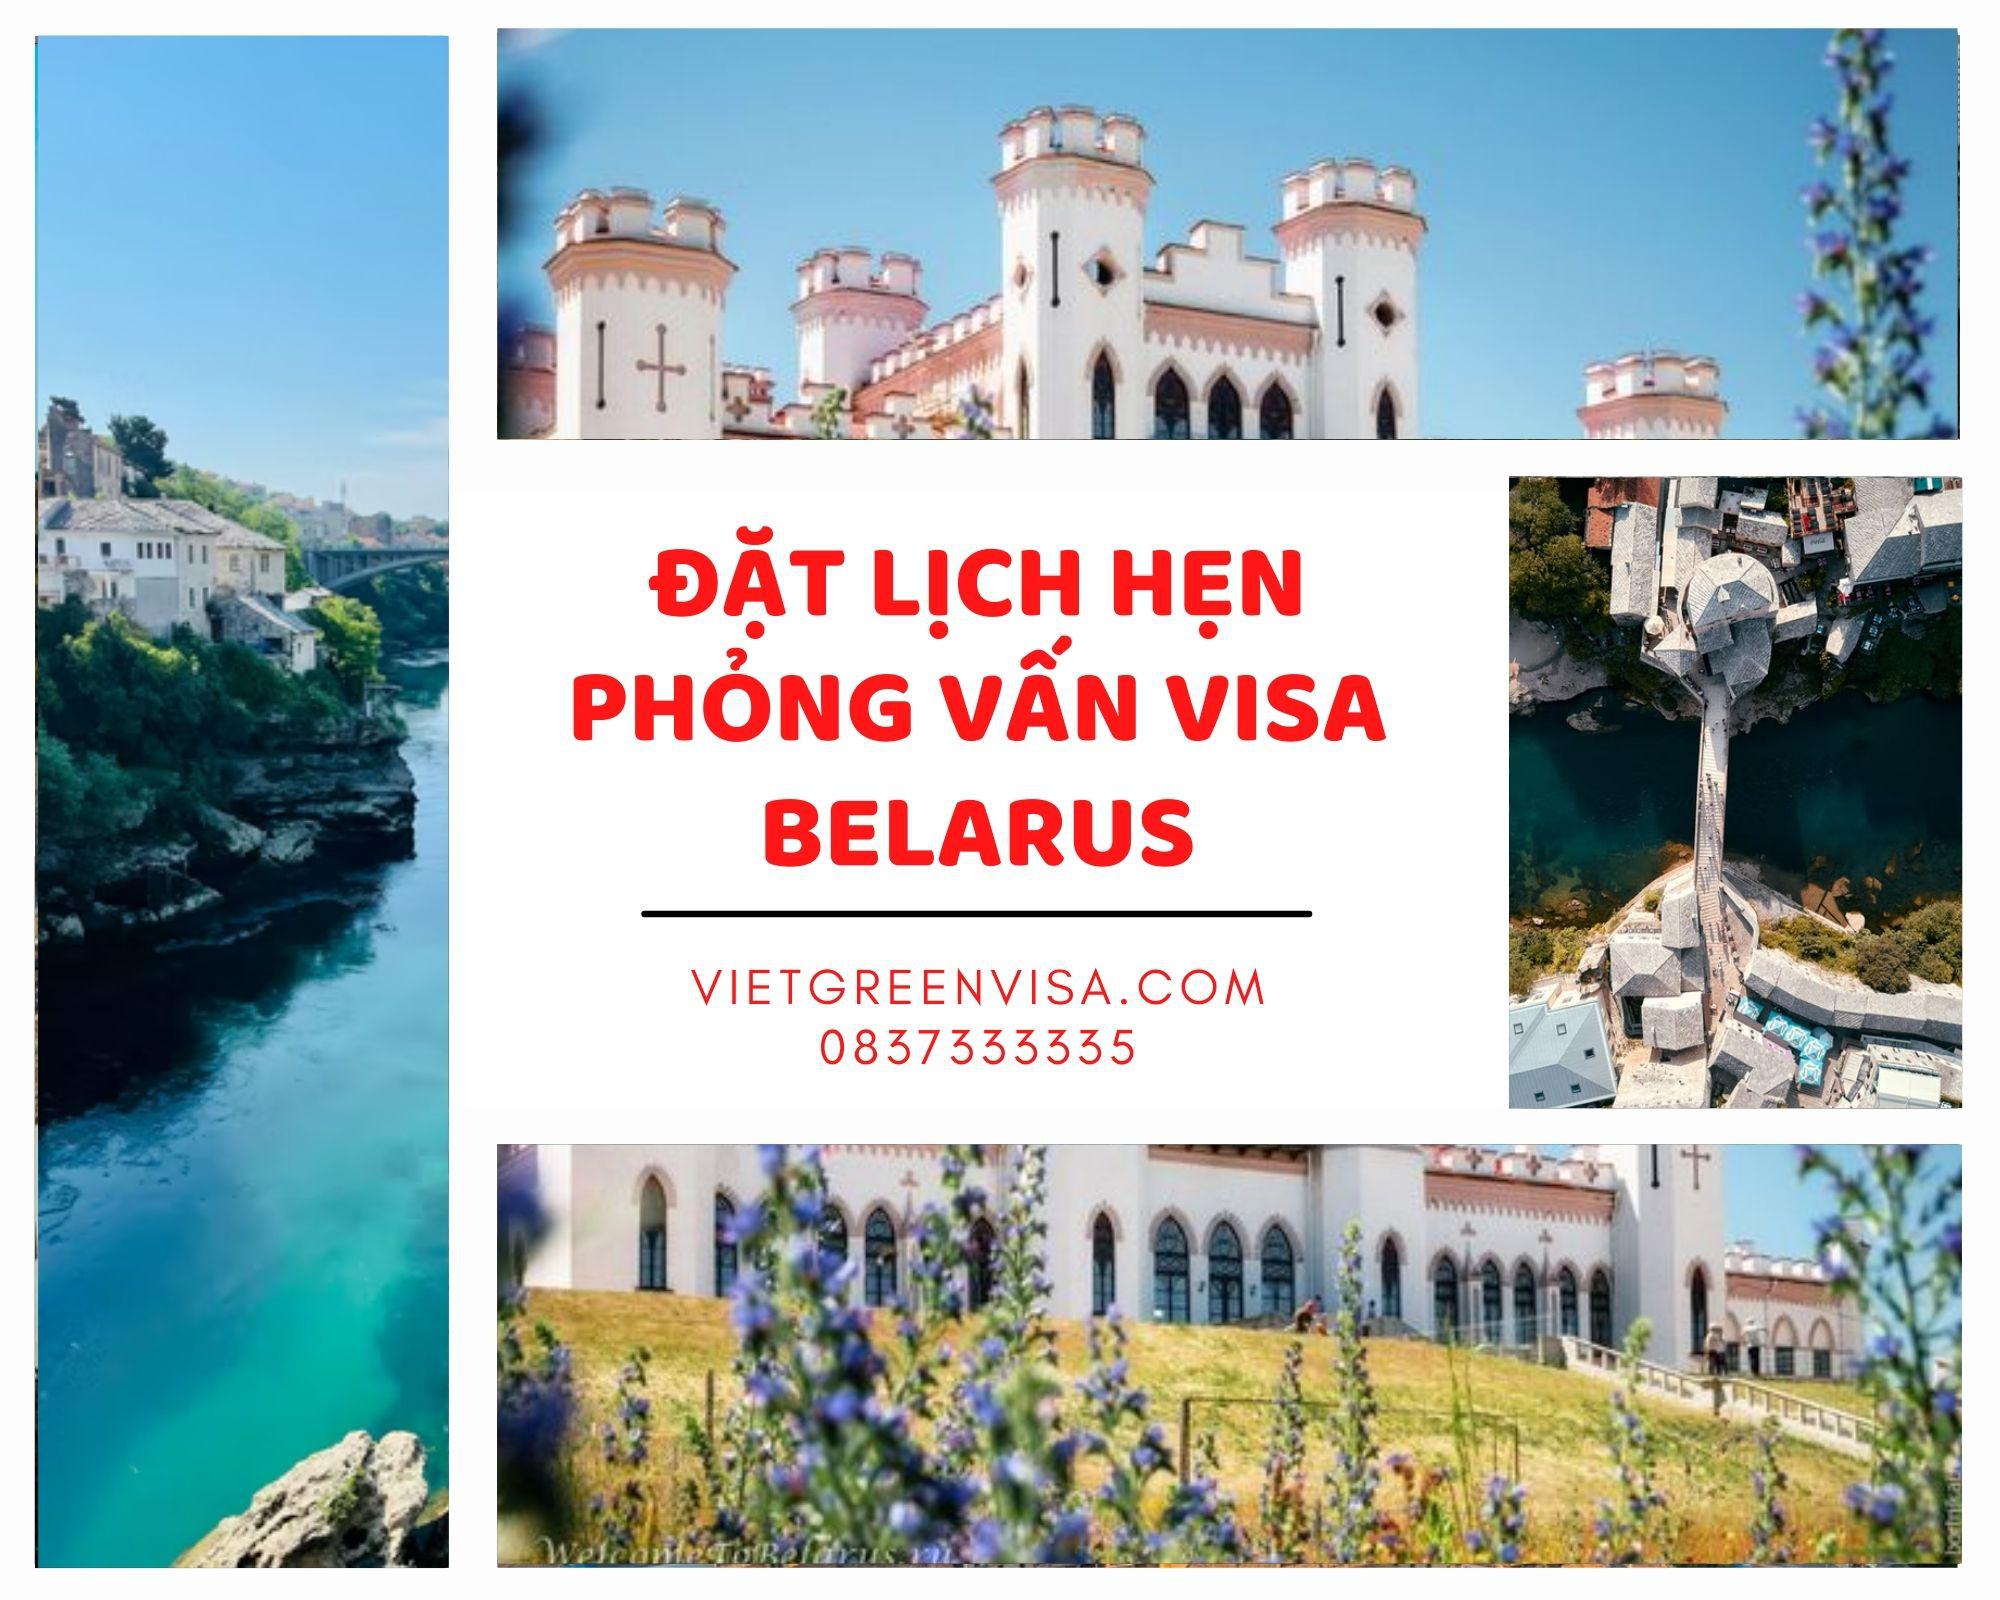 Dịch vụ đặt lịch hẹn phỏng vấn visa Belarus nhanh chóng